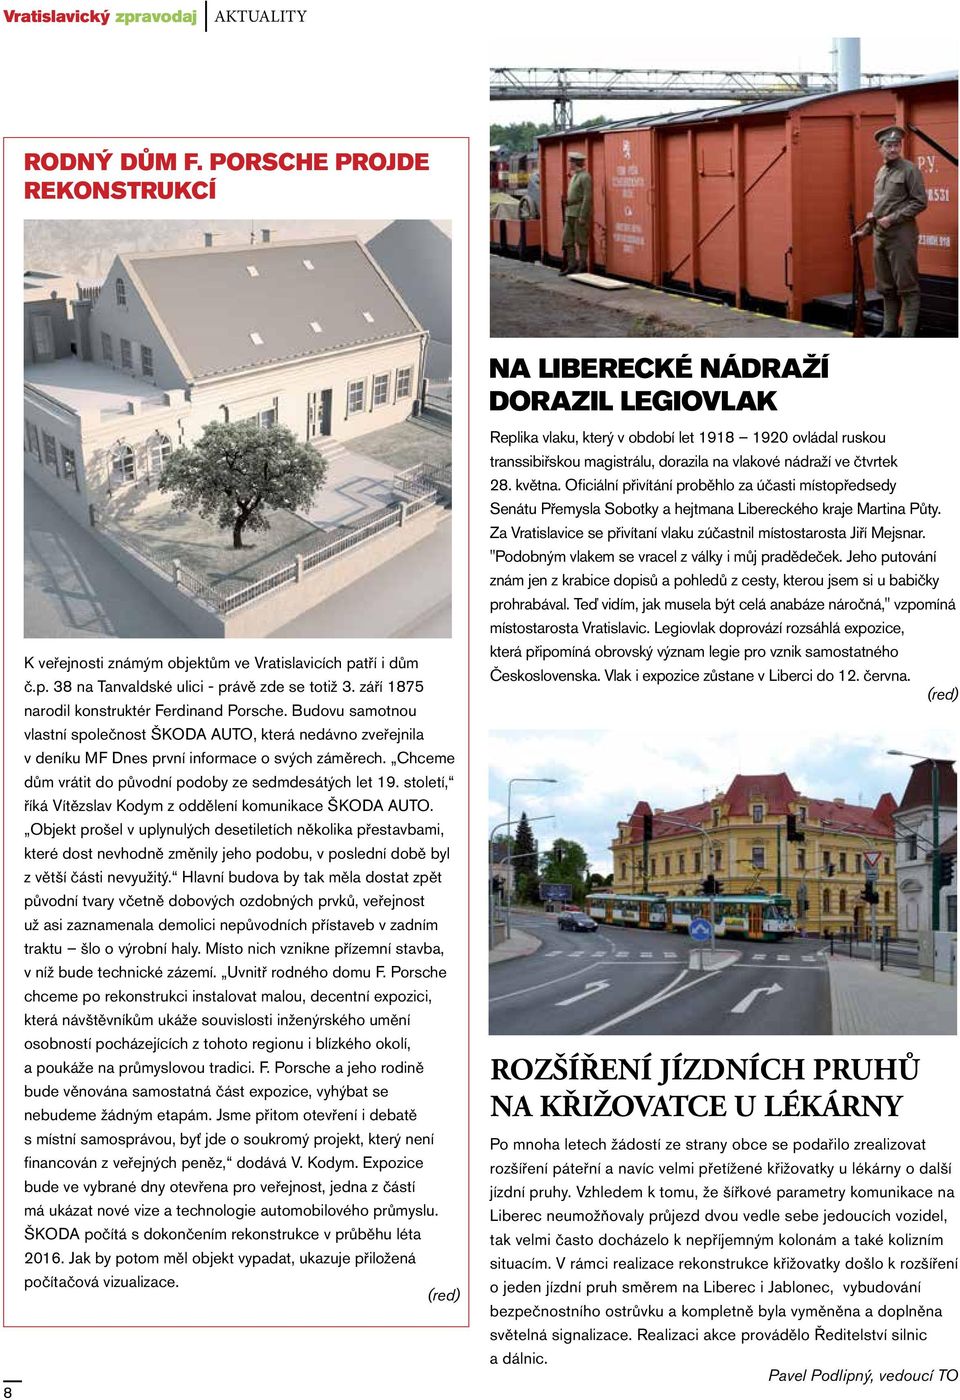 Chceme dům vrátit do původní podoby ze sedmdesátých let 19. století, říká Vítězslav Kodym z oddělení komunikace ŠKODA AUTO.